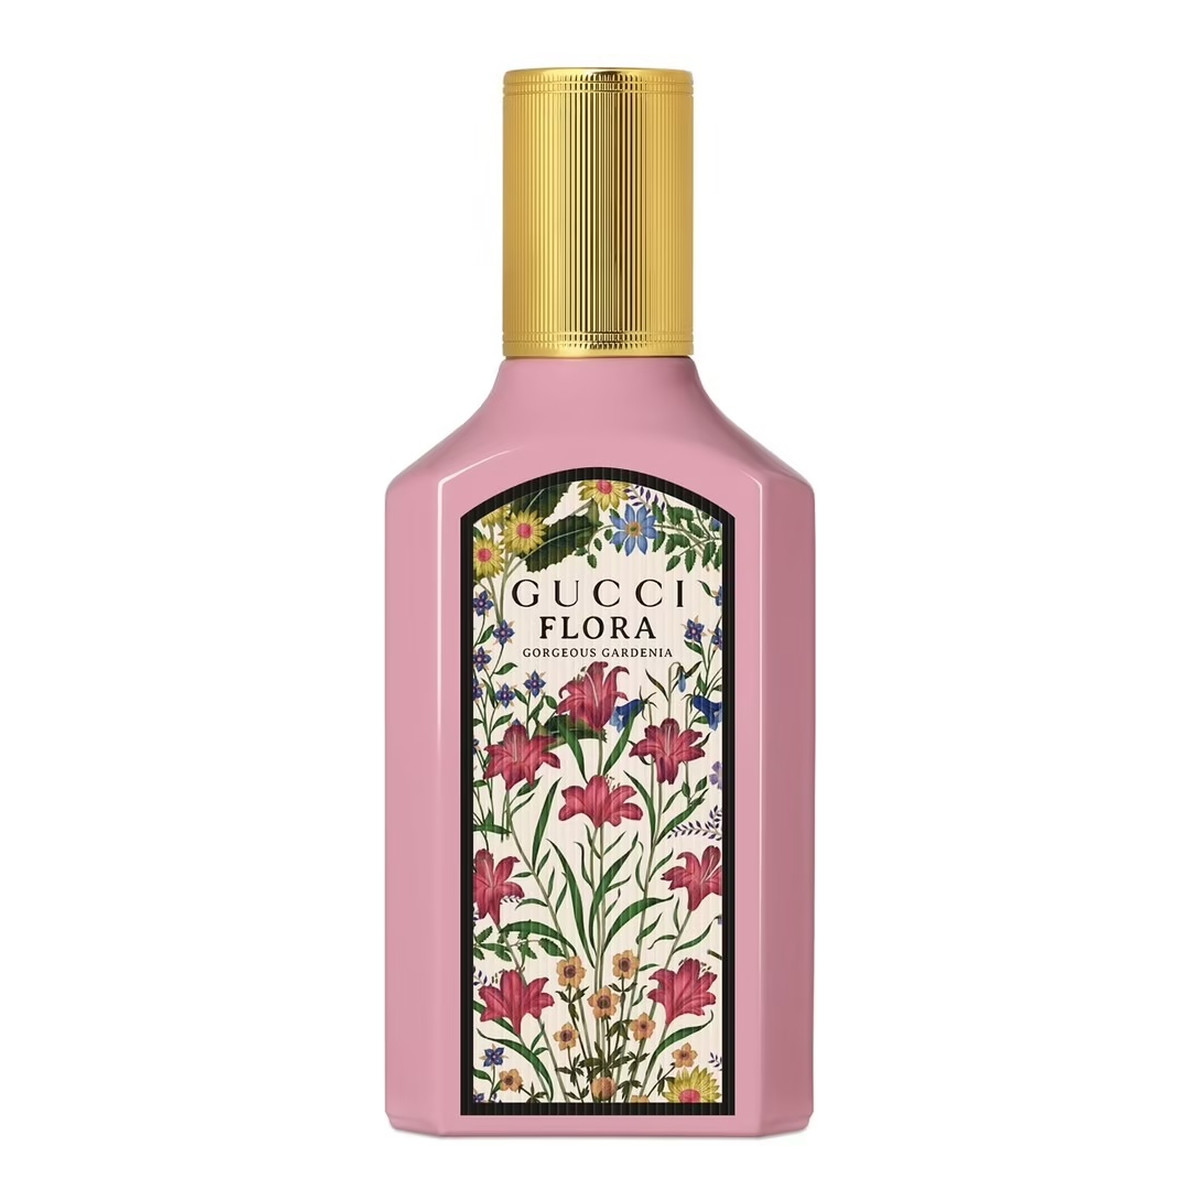 Gucci Flora Gorgeous Gardenia Woda perfumowana spray 50ml